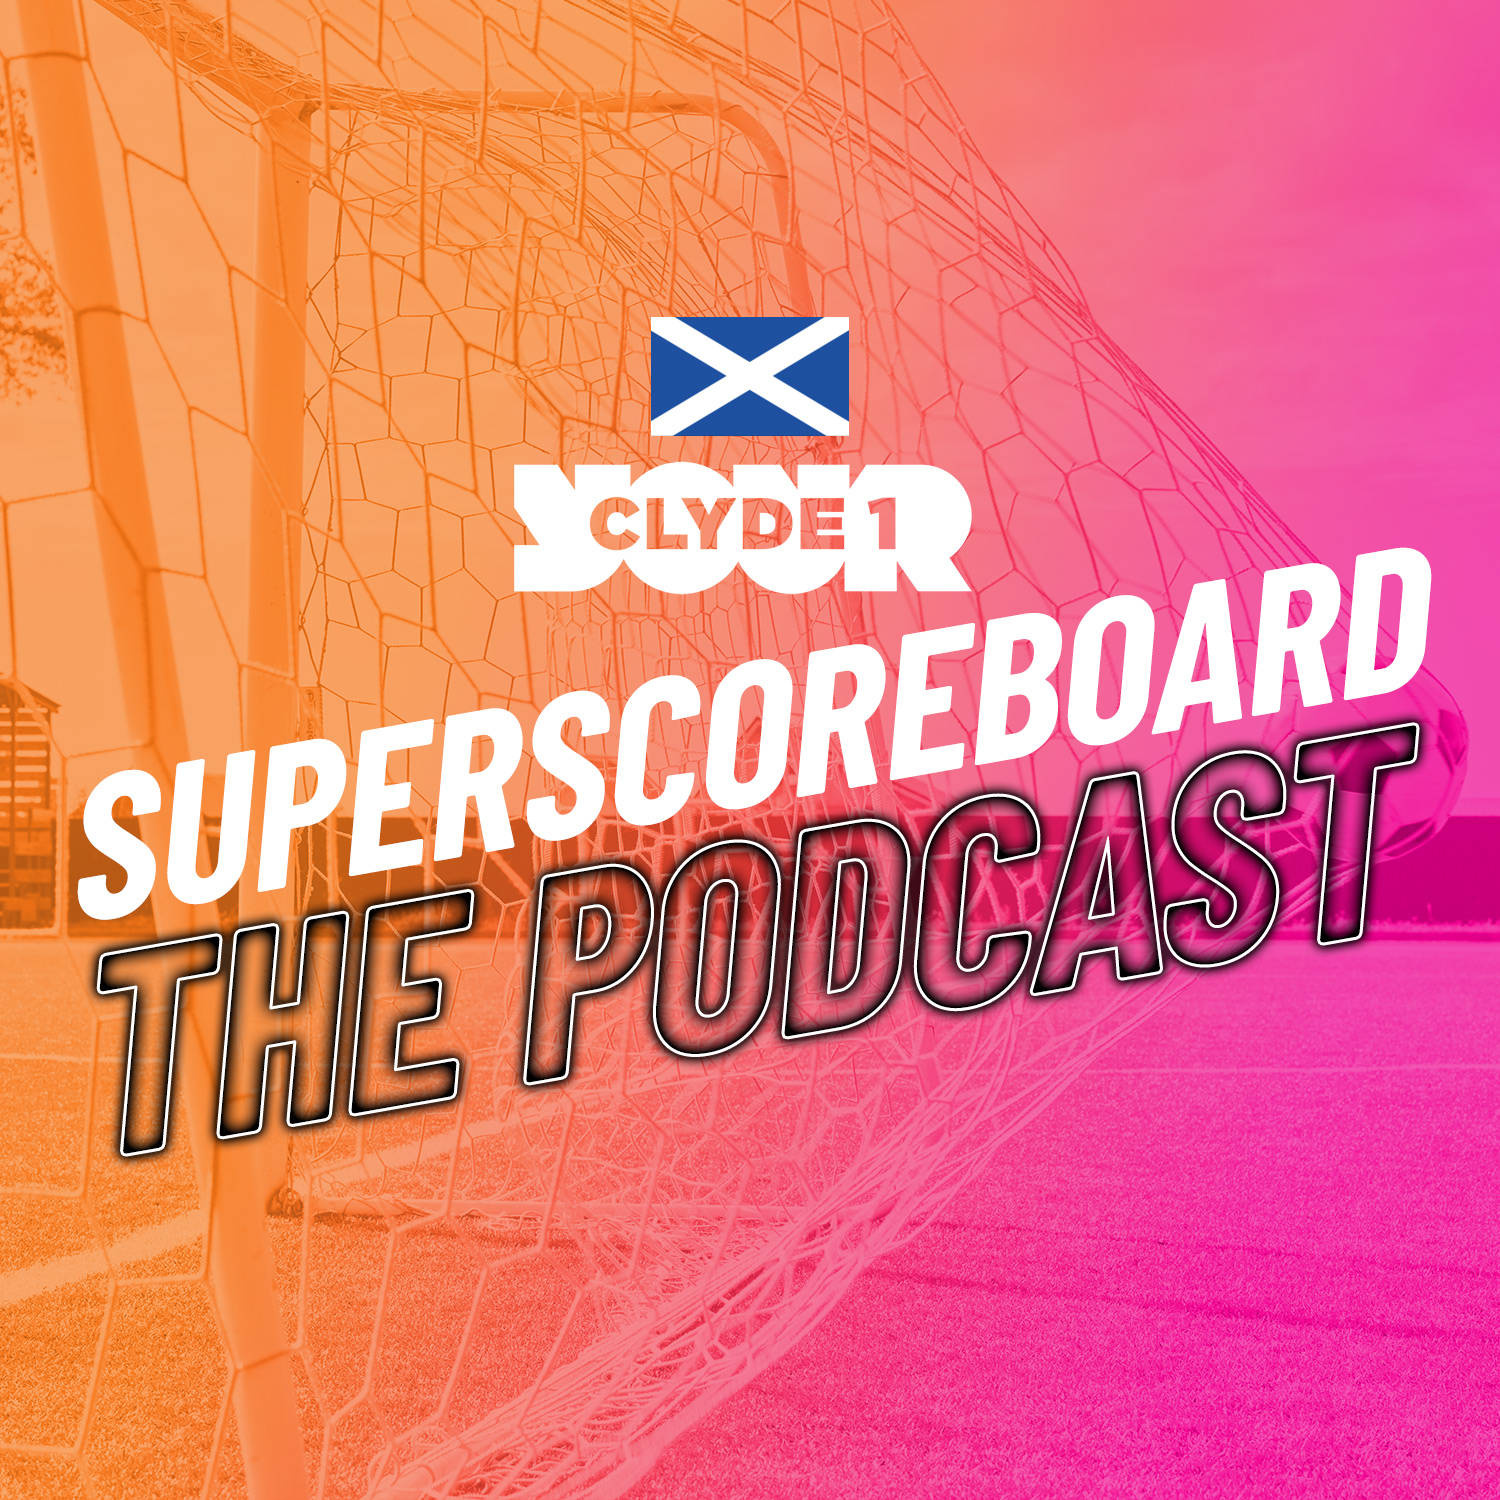 Sunday 3rd December Clyde 1 Superscoreboard – Part 1